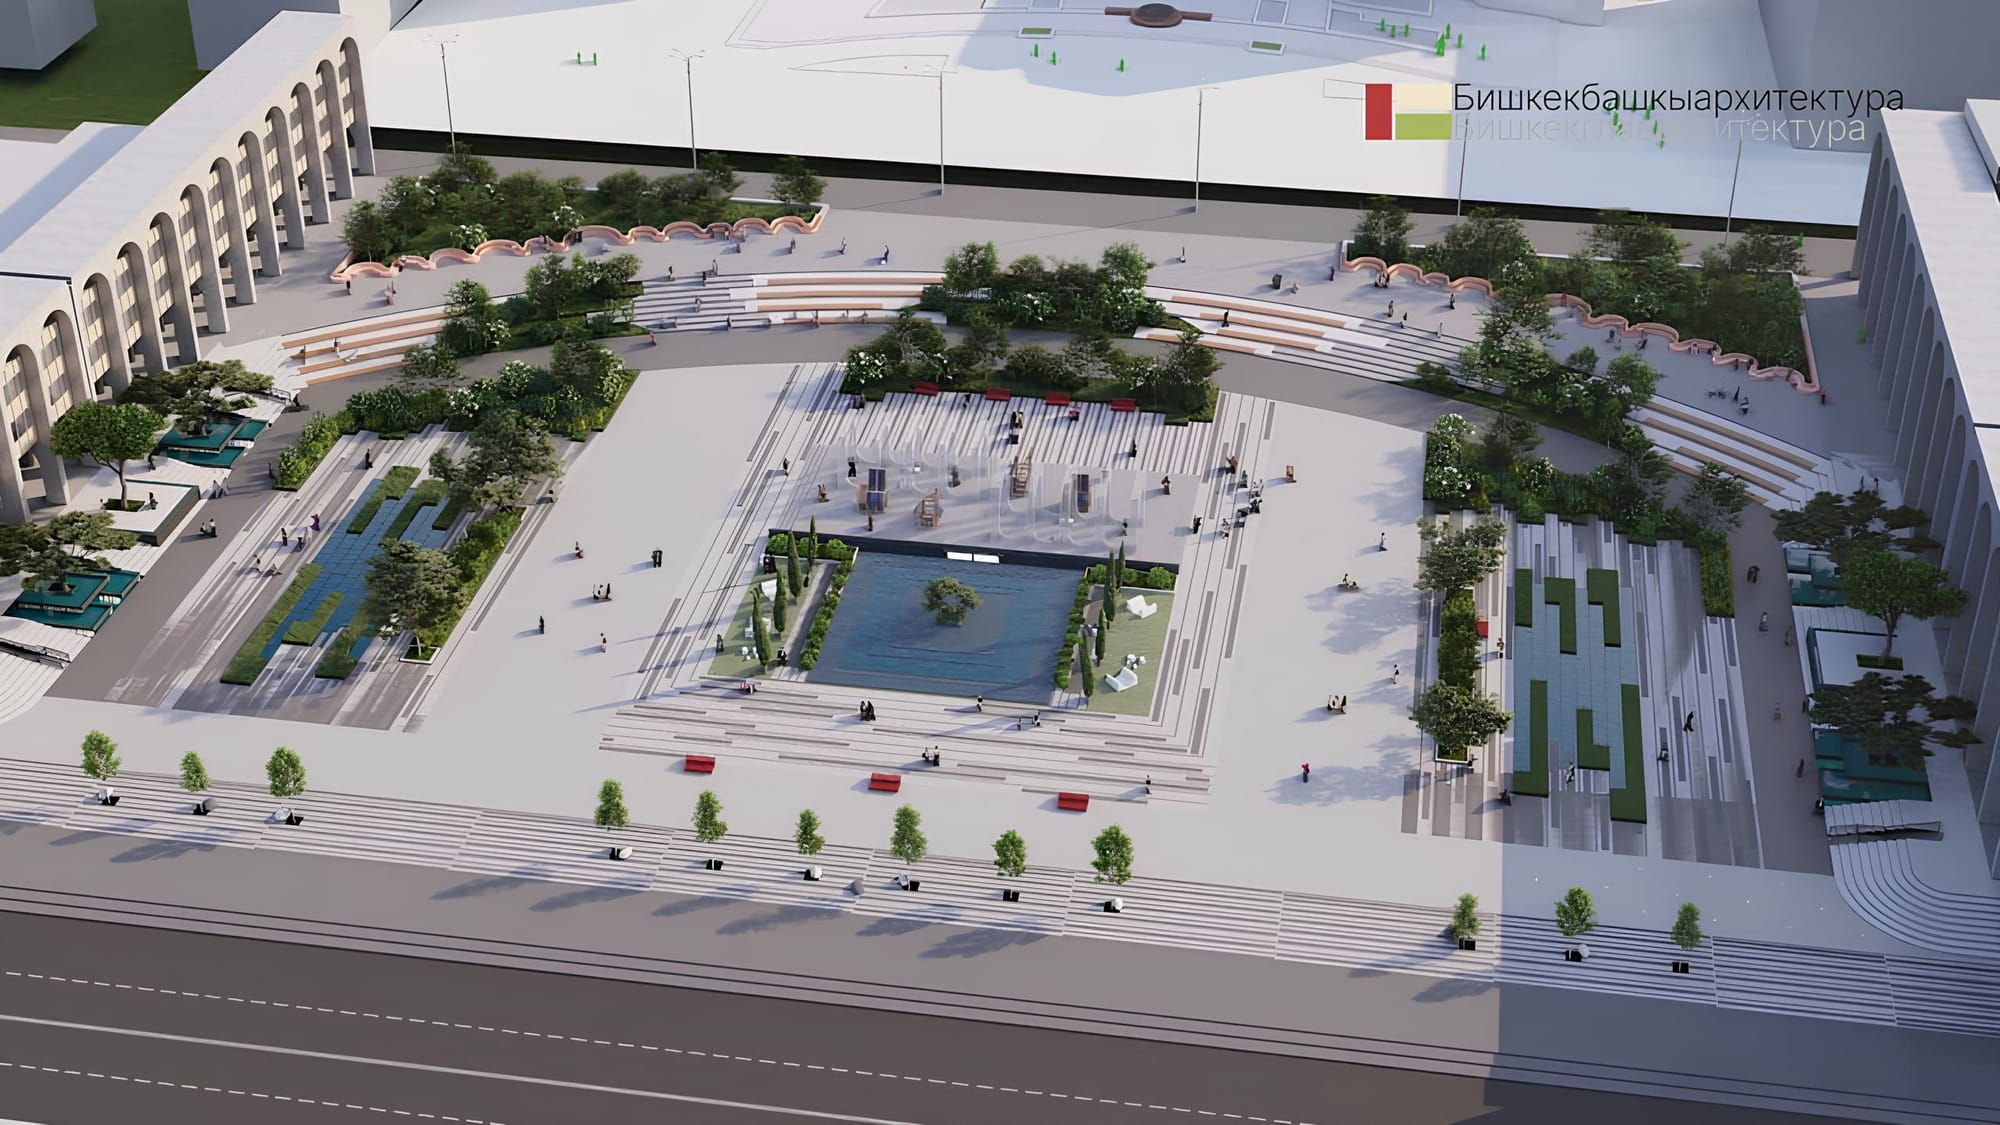 Как будет выглядеть площадь Ала-Тоо после реконструкции – эскизы